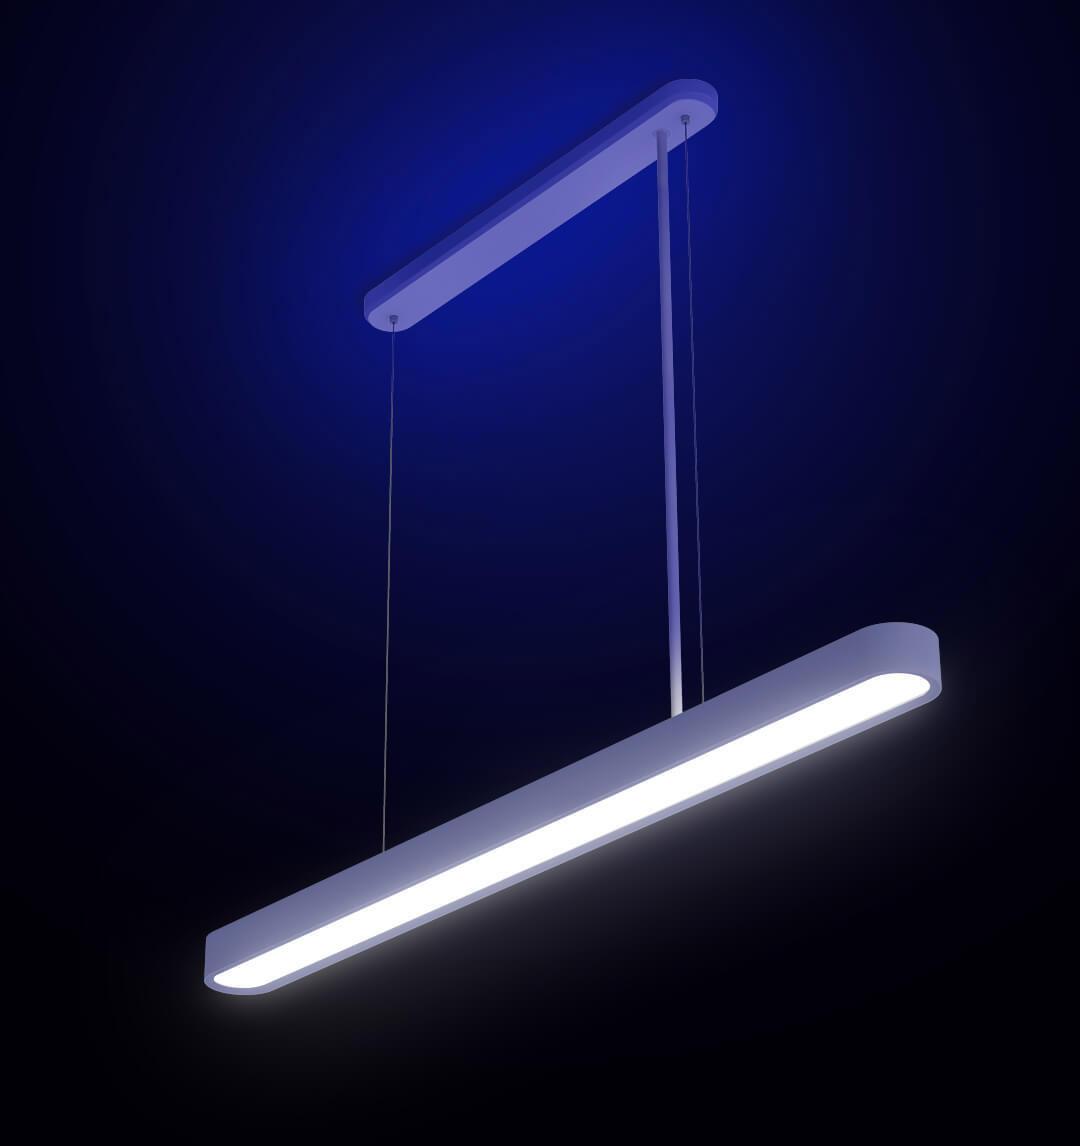 Xiaomi Yeelight Ceiling Lamp